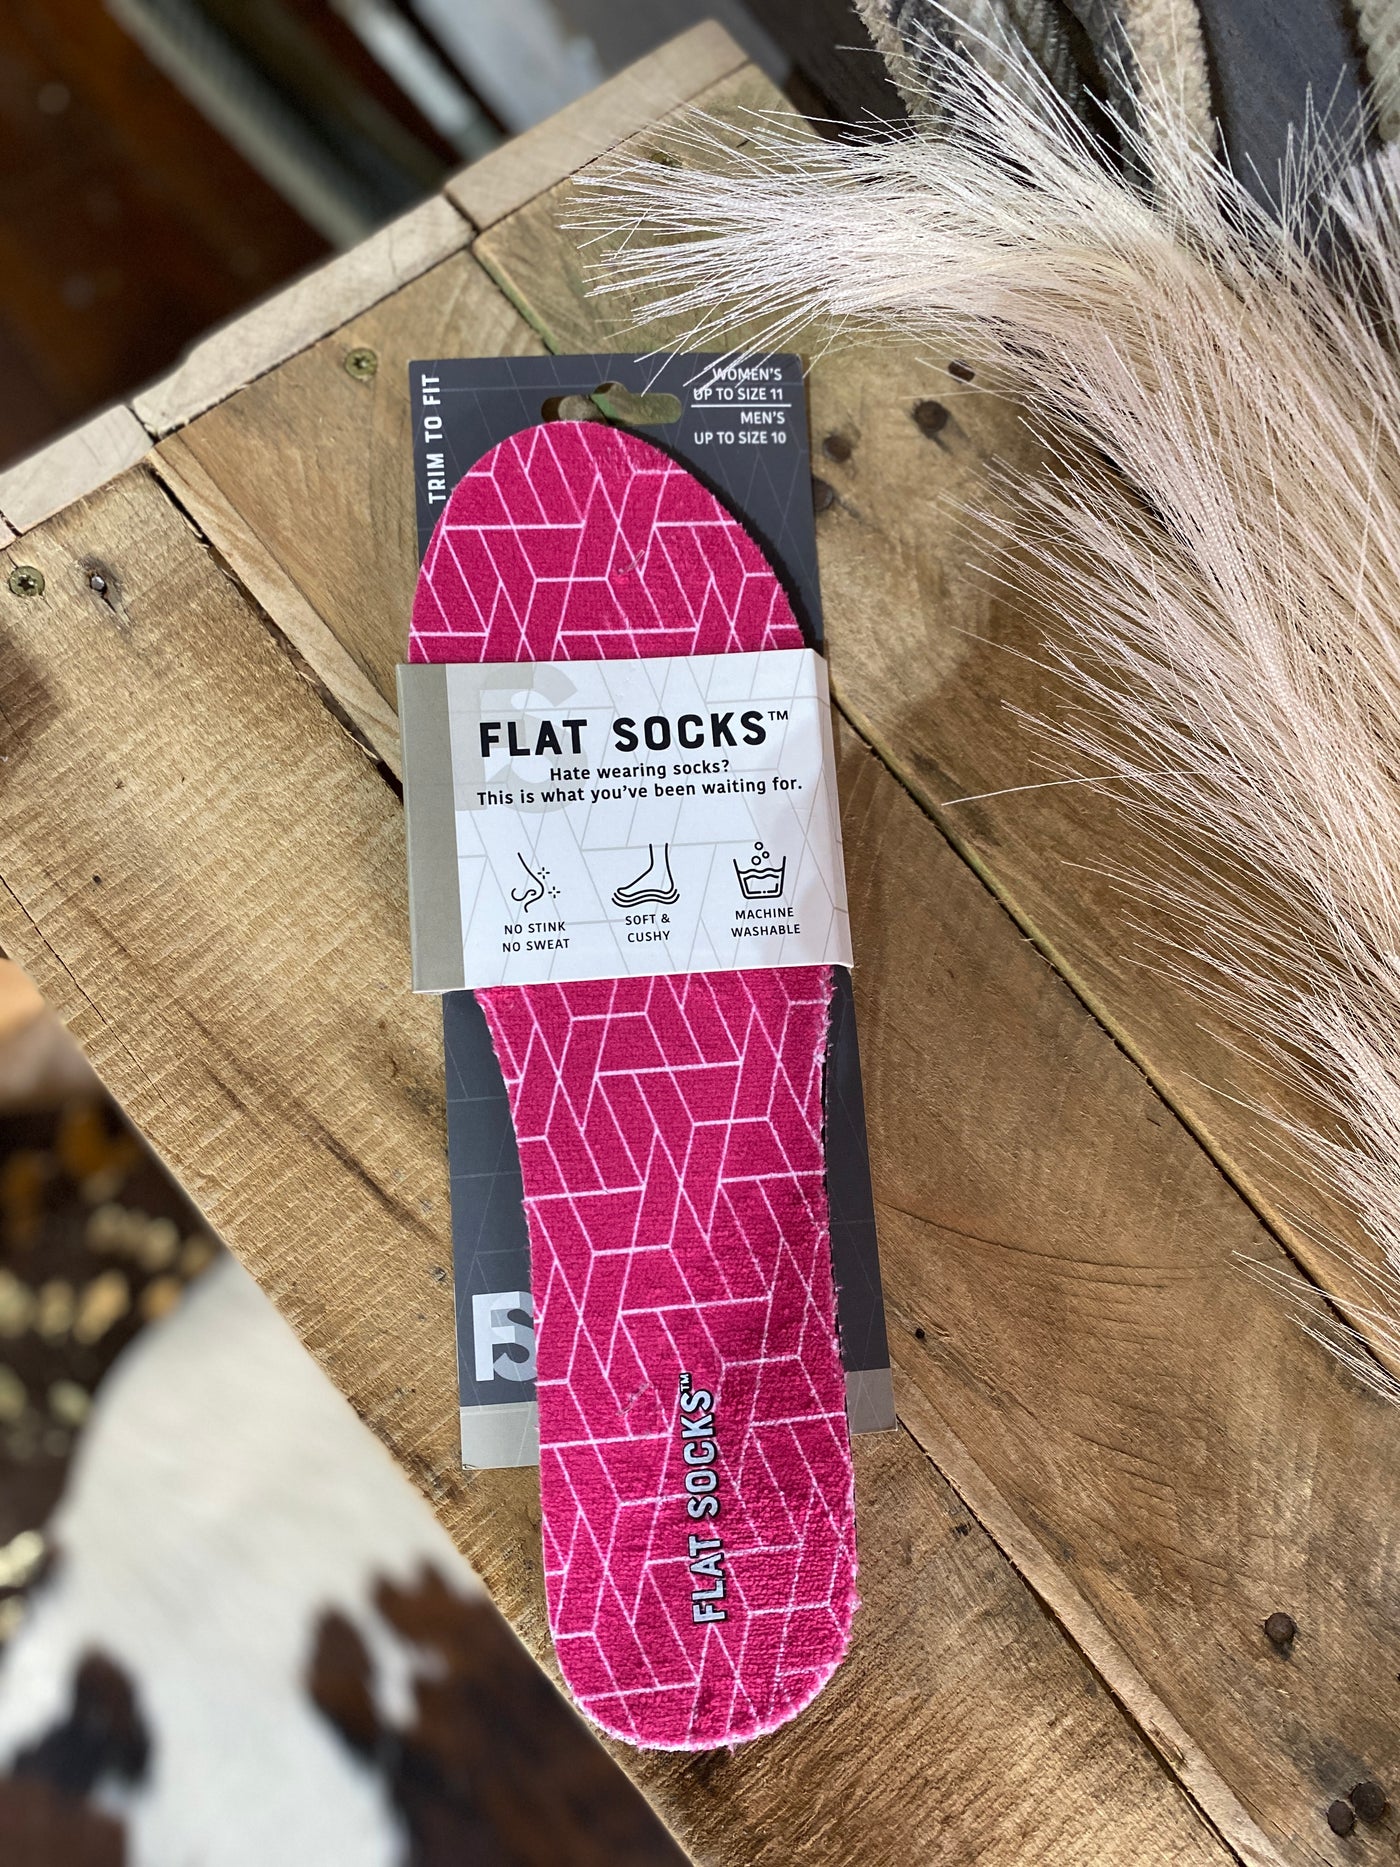 No-Slip Machine Washable Flat Socks